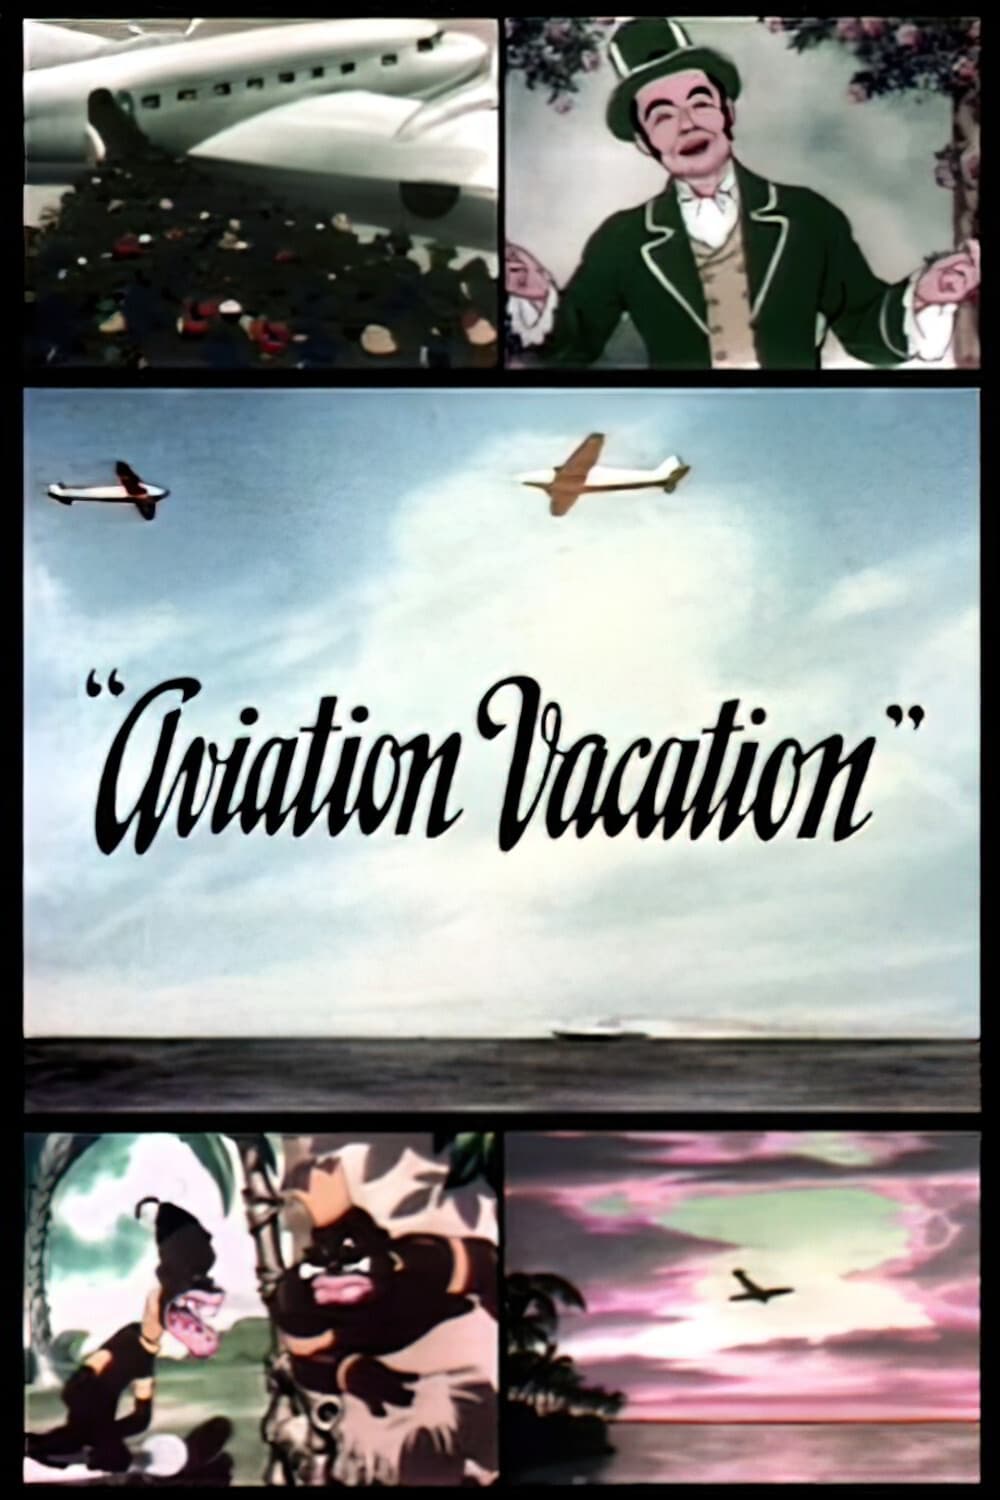 Aviation Vacation (1941)